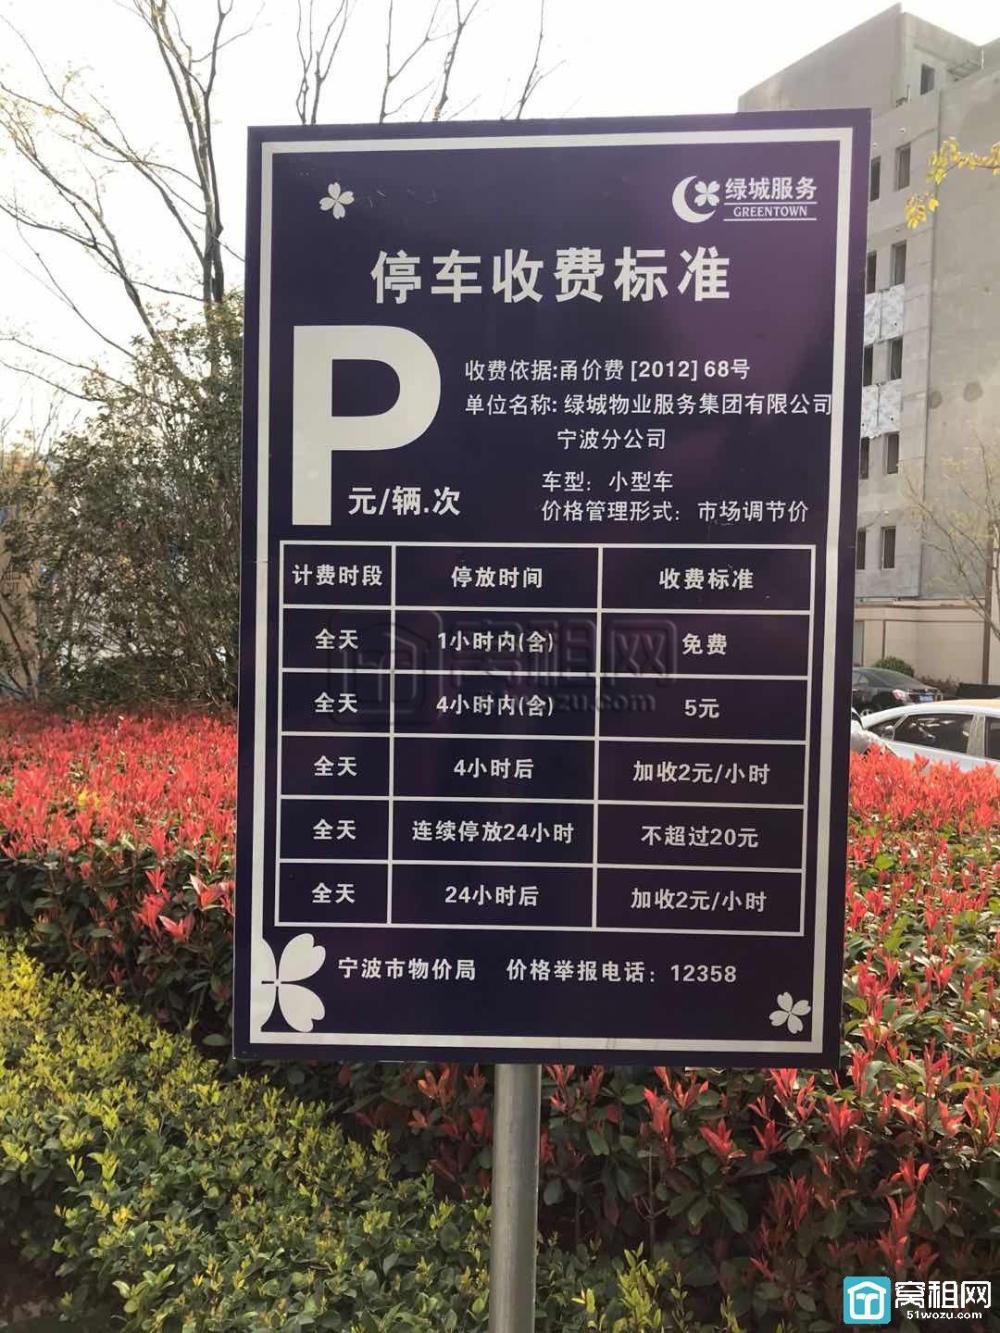 宁波智慧园深蓝大厦停车收费(图2)